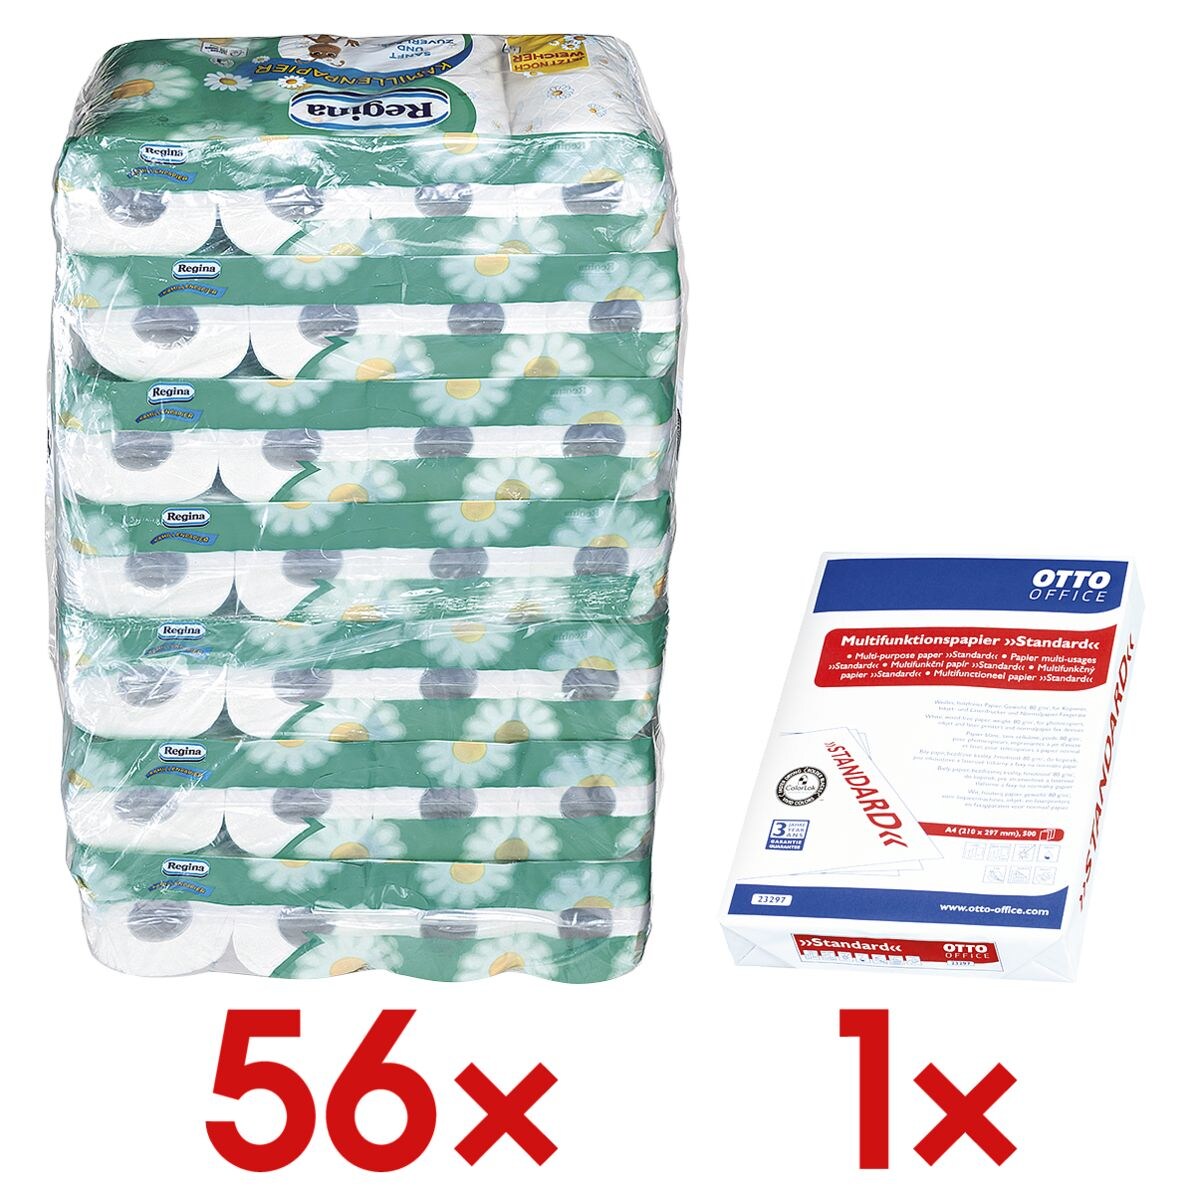 Regina Toiletpapier Kamille 3-laags, wit - 56 rollen (7 pakken à 8 rollen) incl. Multifunctioneel papier »Standard«